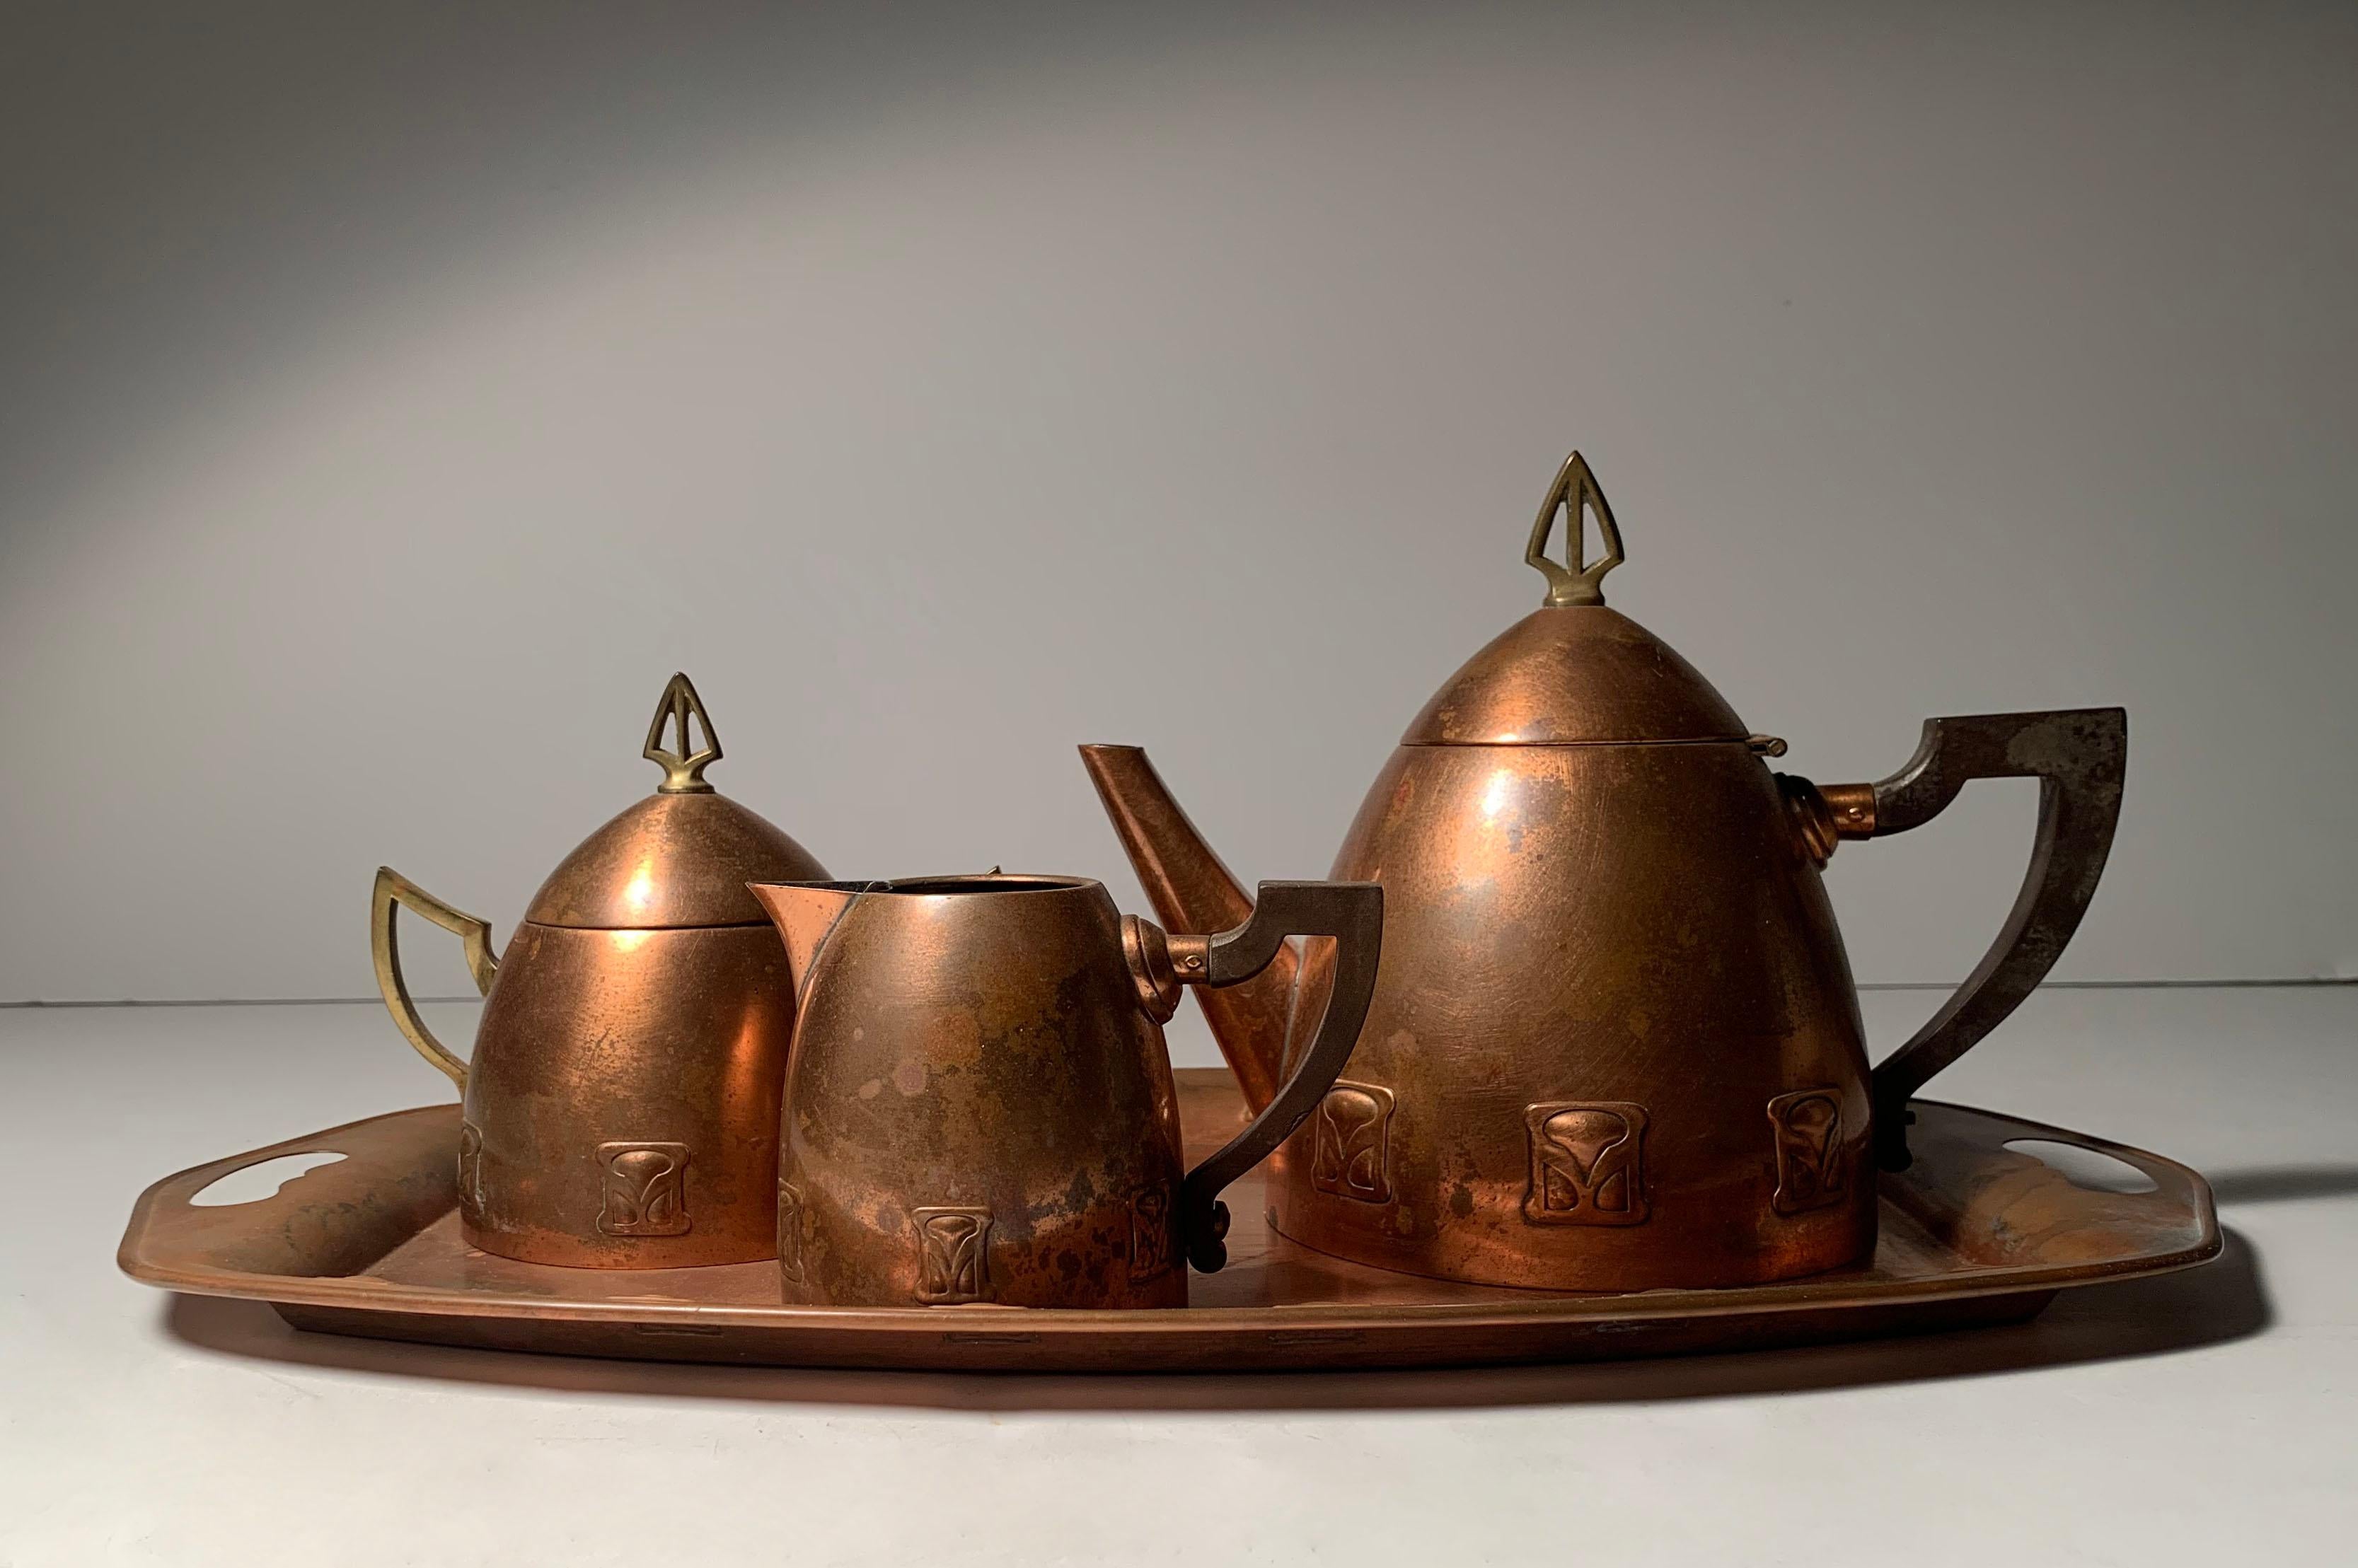 Jugendstil-Teekannen-Set aus Kupfer und Messing von Atelier Mayer für WMF, Deutschland, 1905-1910

Die Abbildungen zeigen nur die Teekanne.